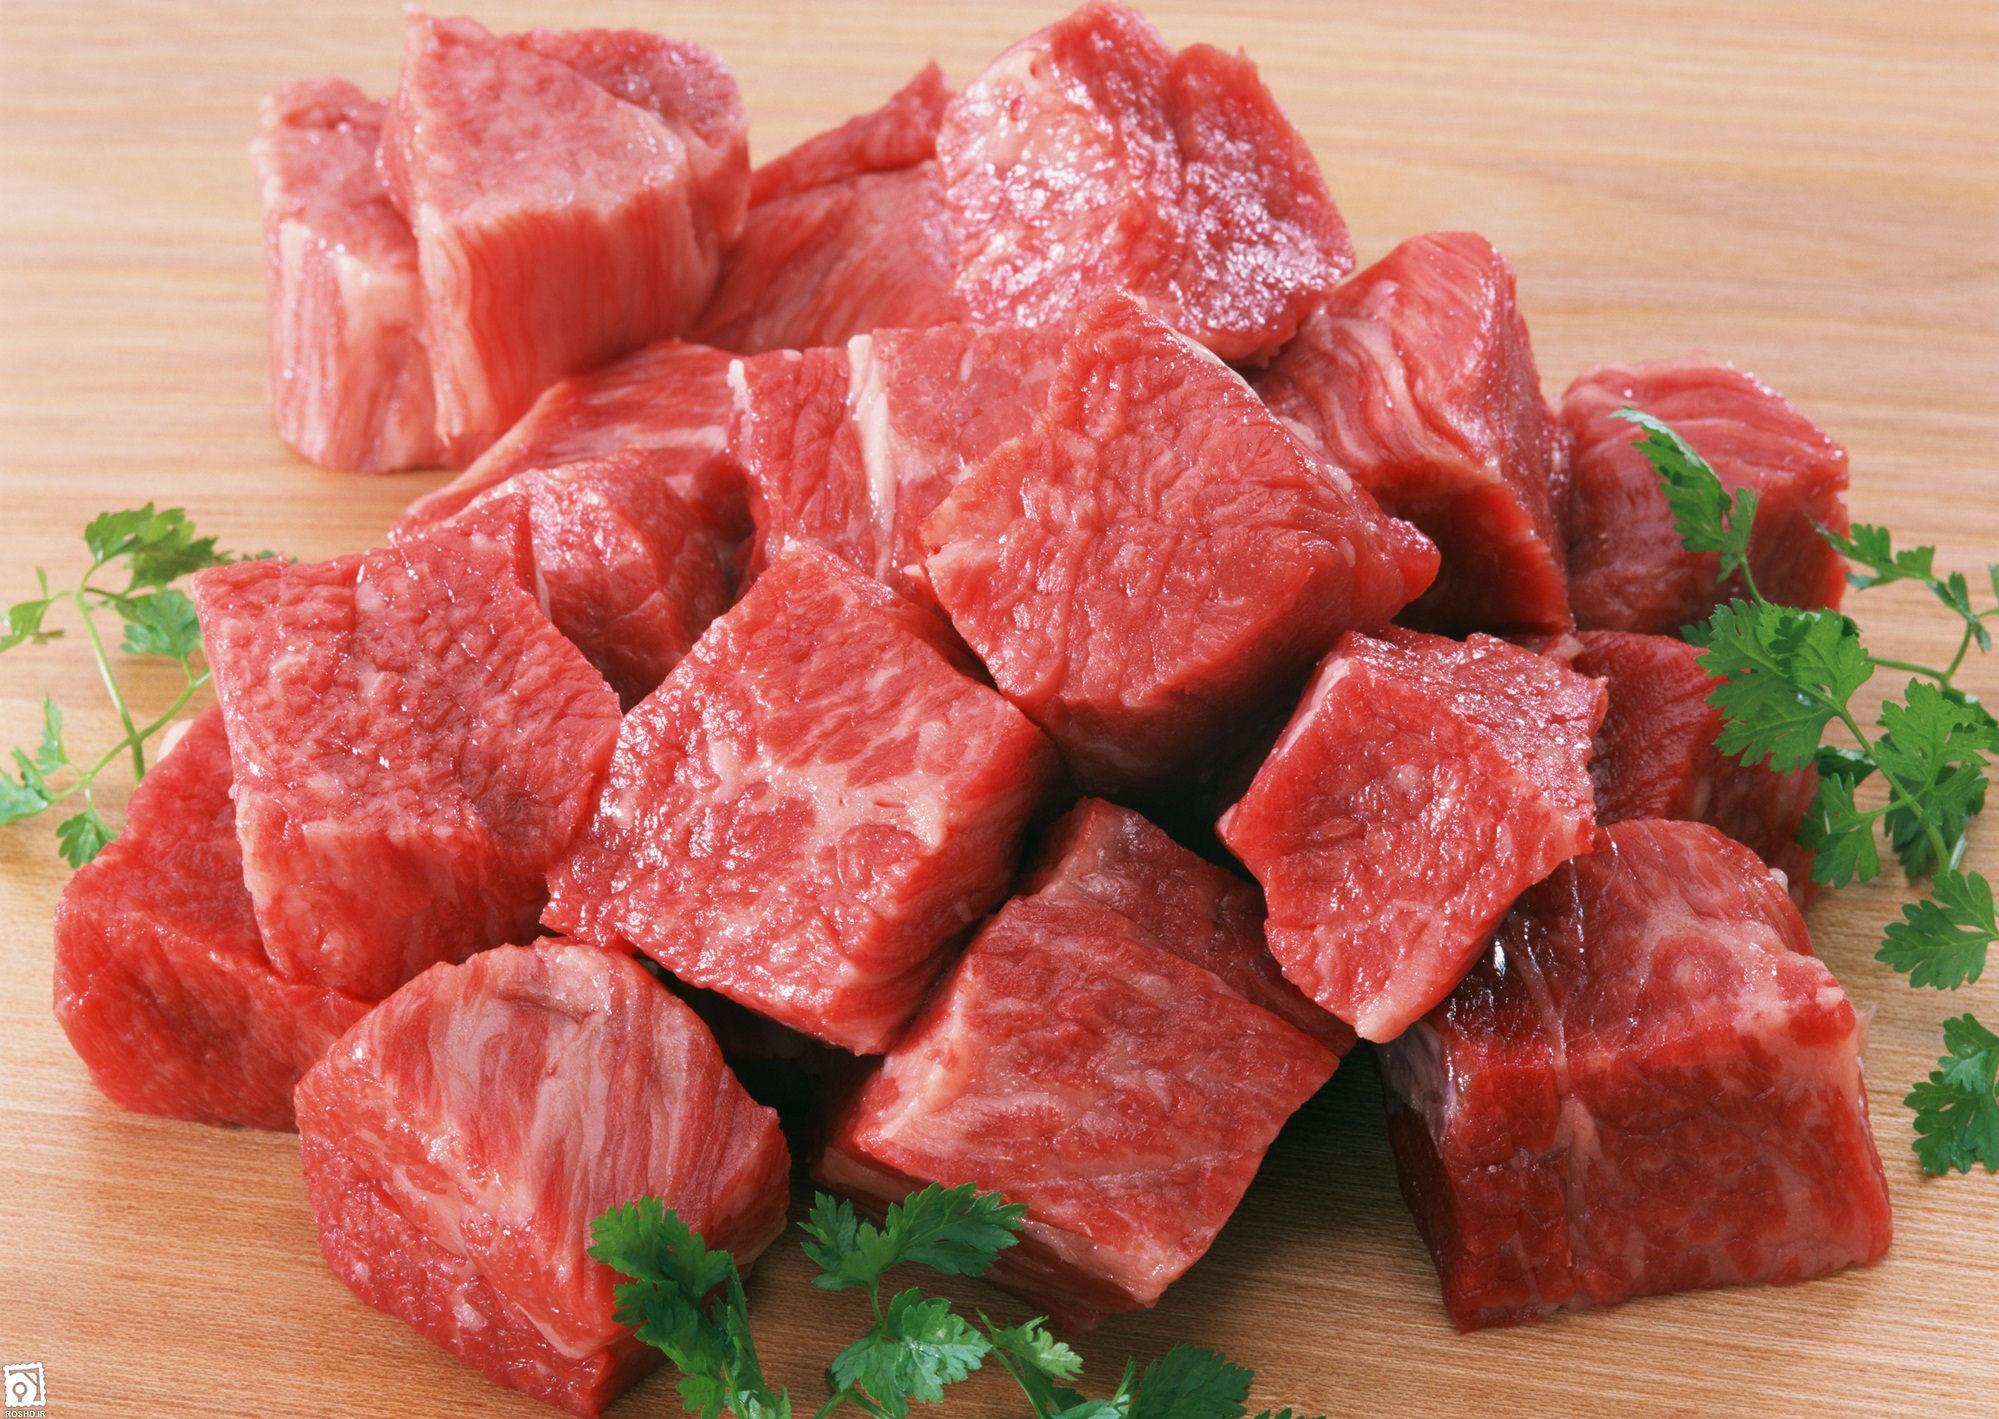 امتناع مسئولان از اعلام قیمت گوشت قرمز/ گرانی دلار به بازار گوشت رسید